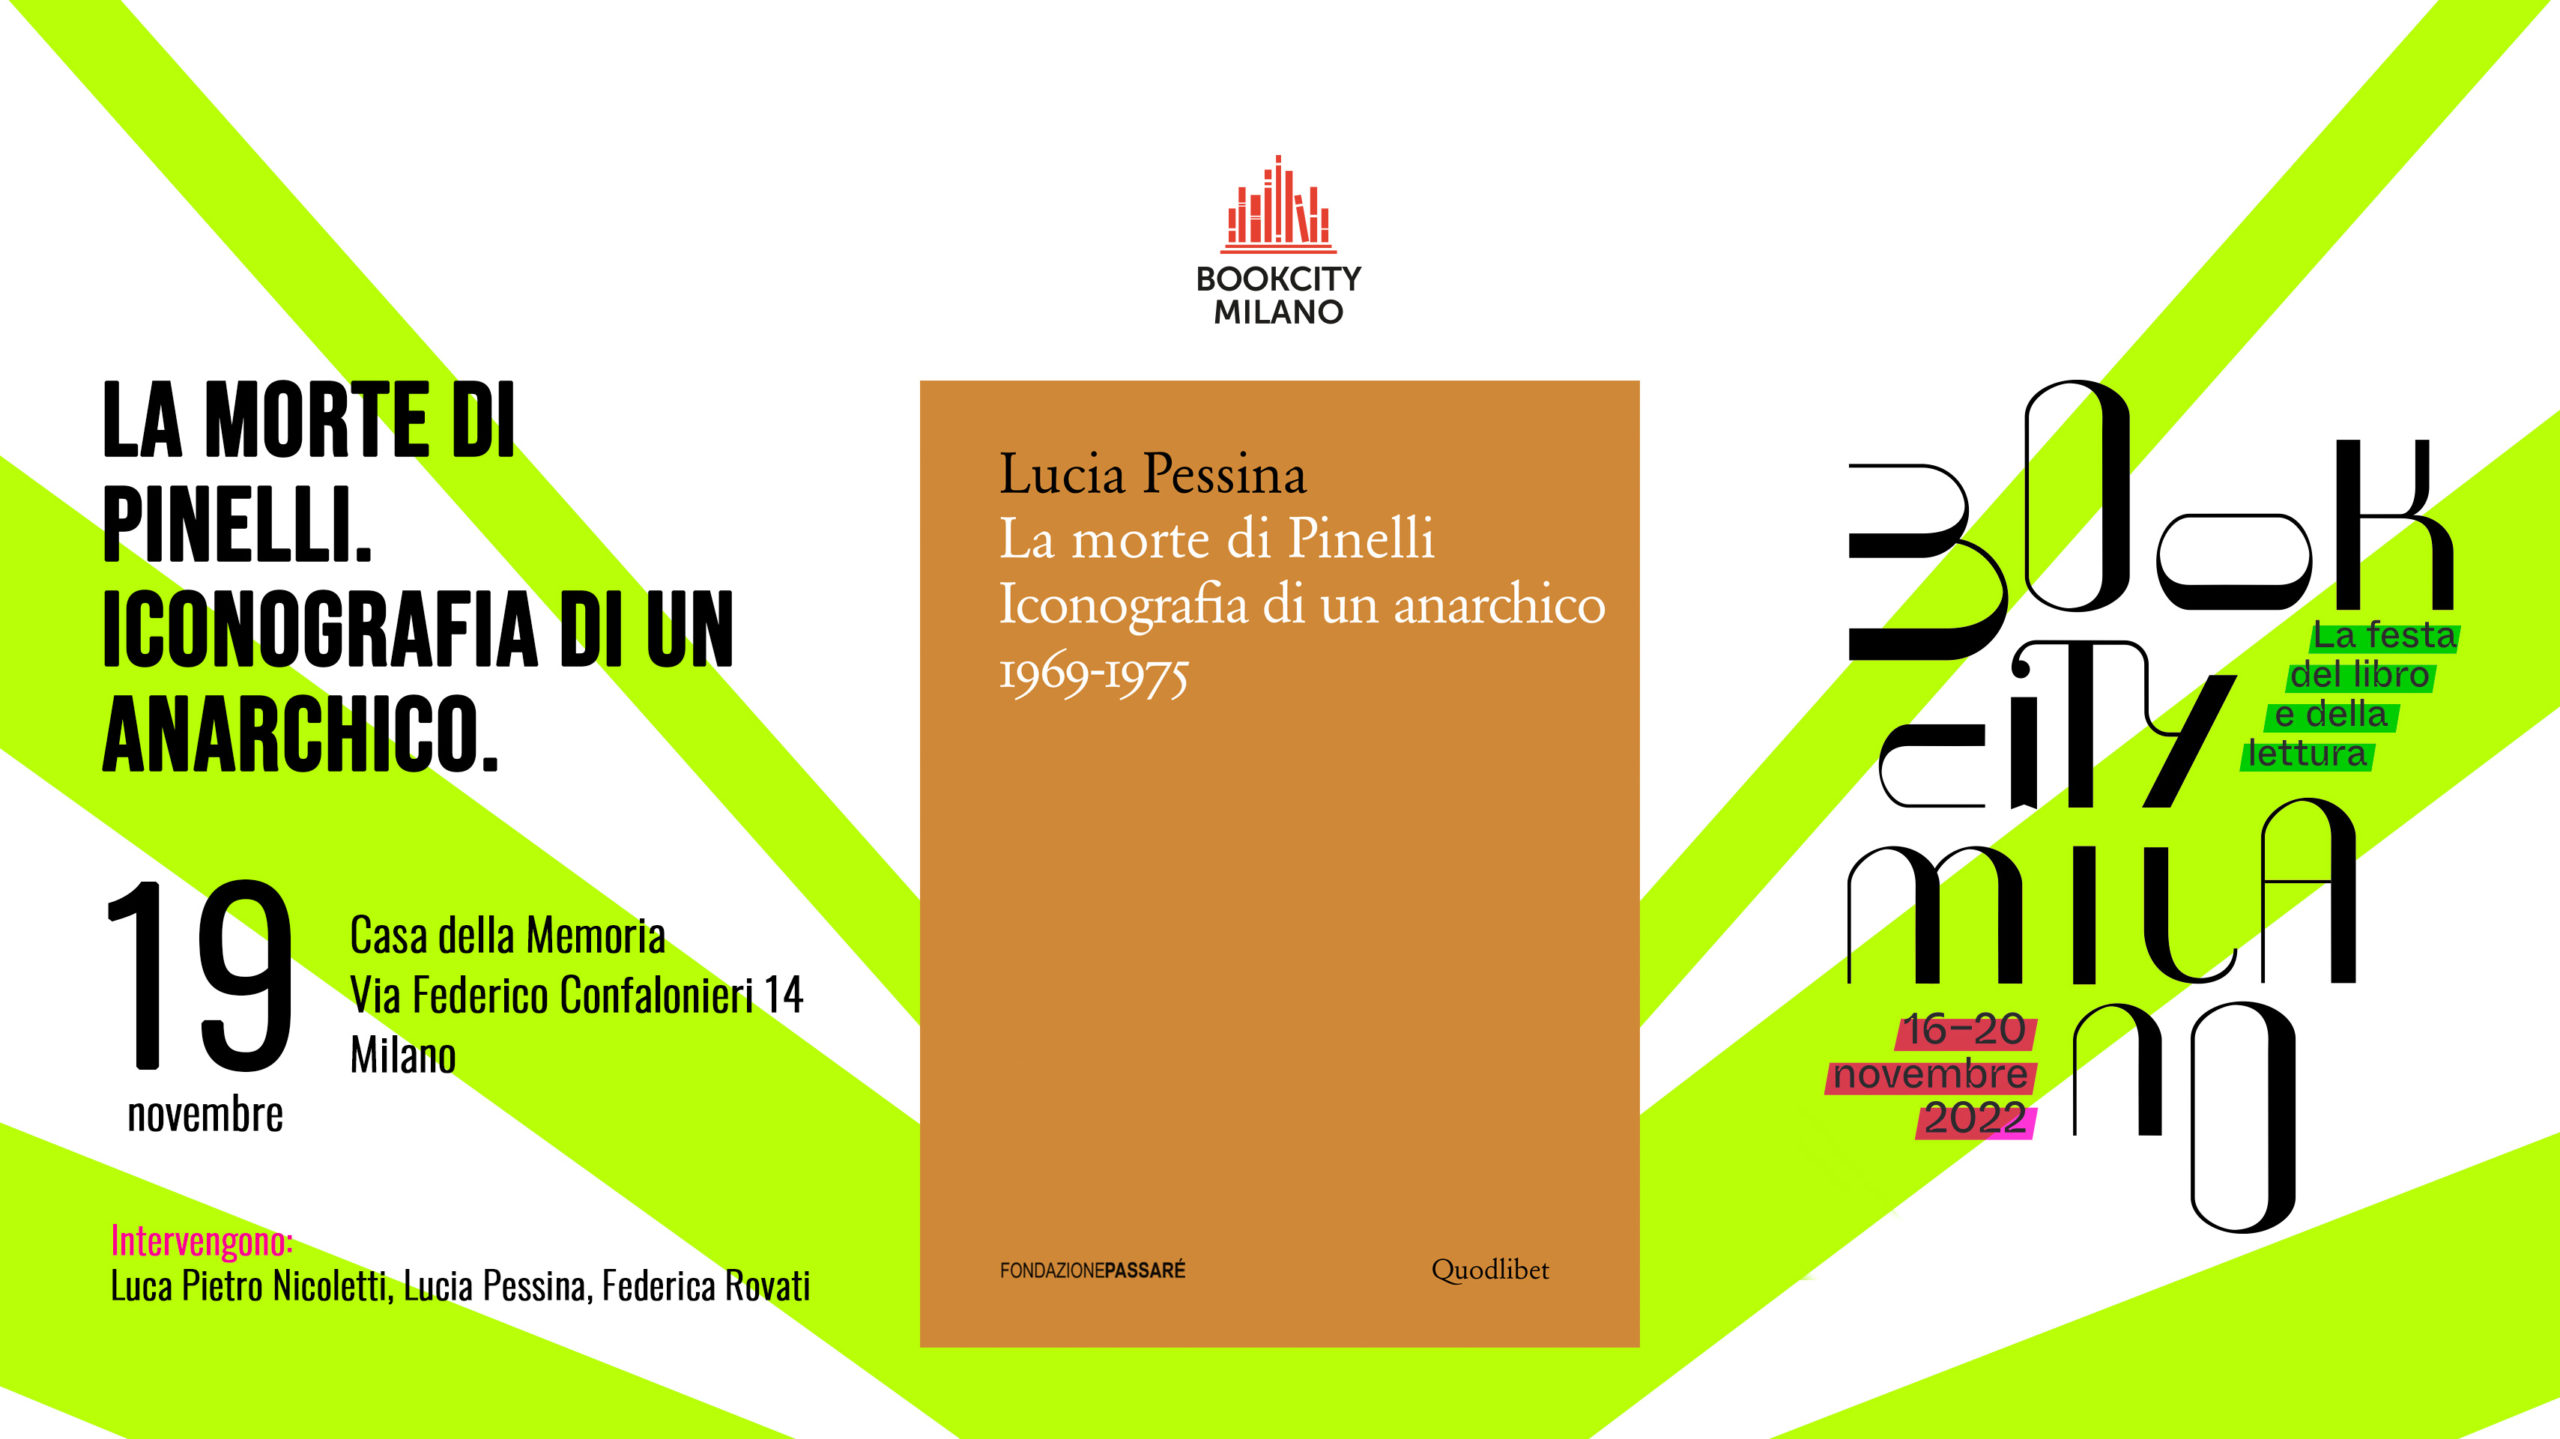 Bookcity 2022, casa della memoria, milano, Pinelli, Lucia Pessina